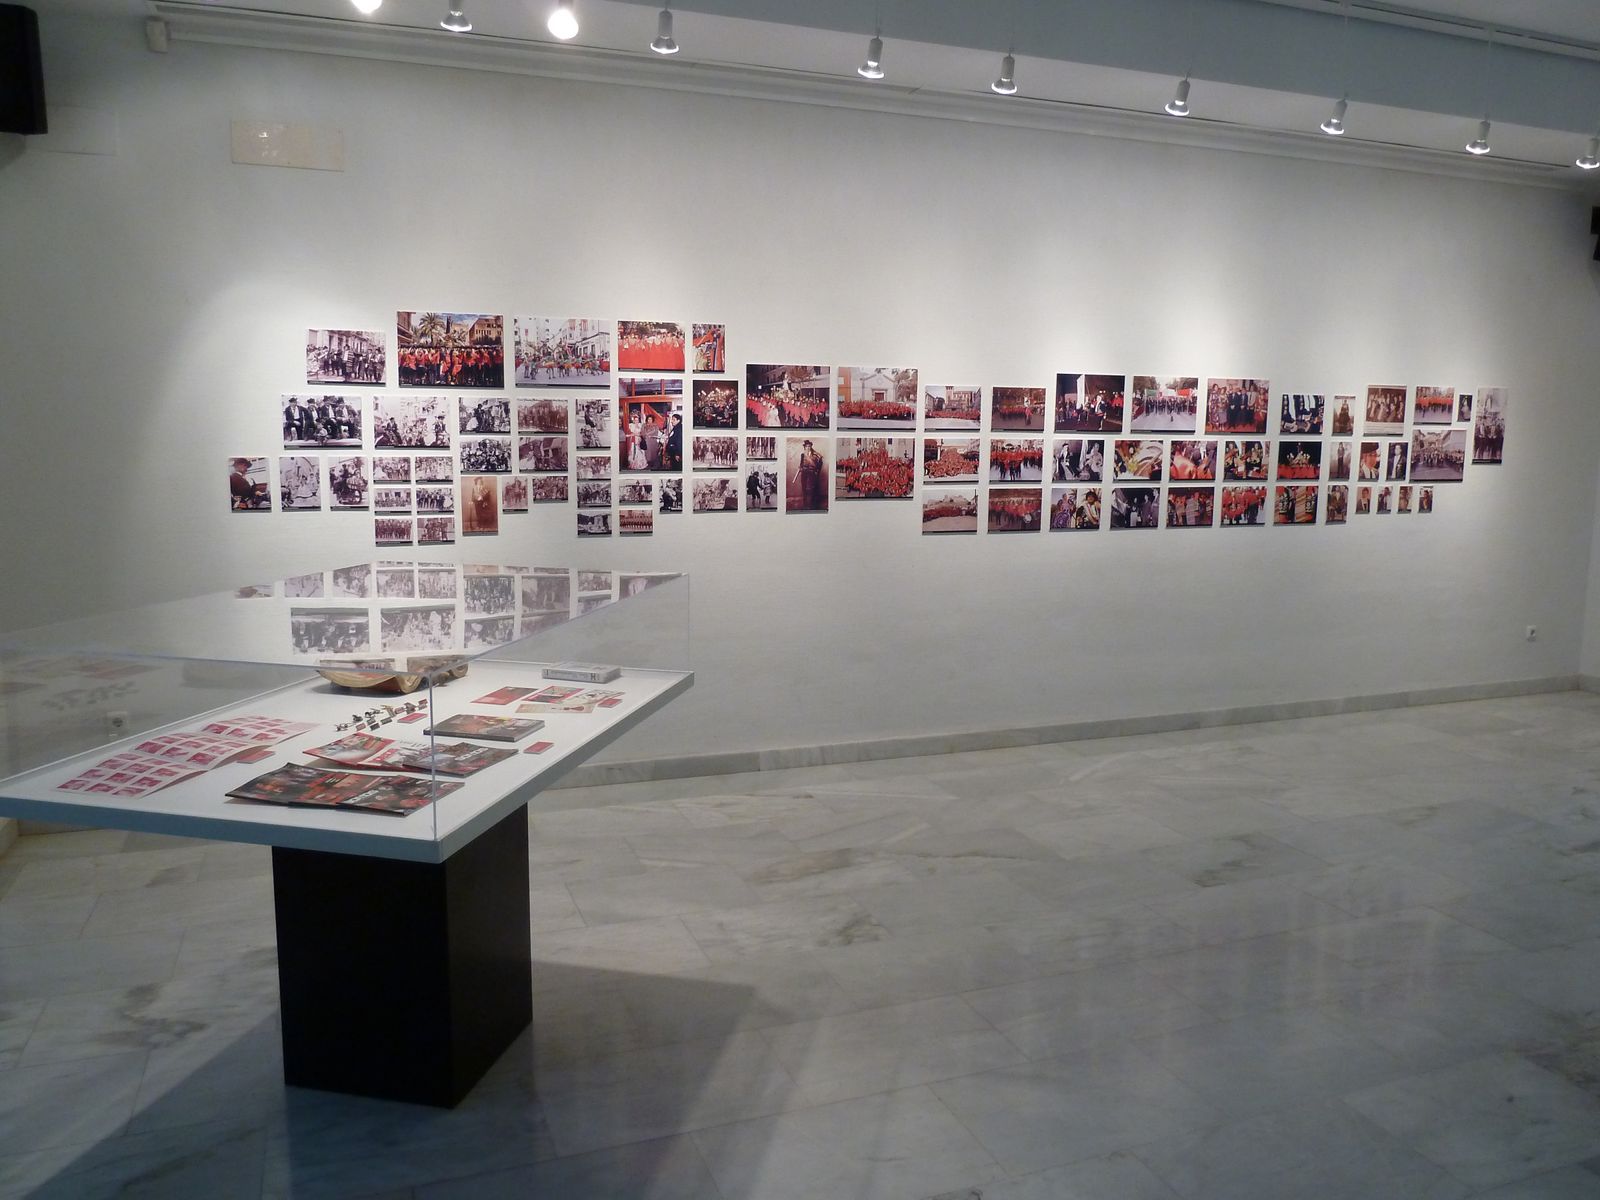 Exposición Contrabandista "Historia de una comparsa" año 2012